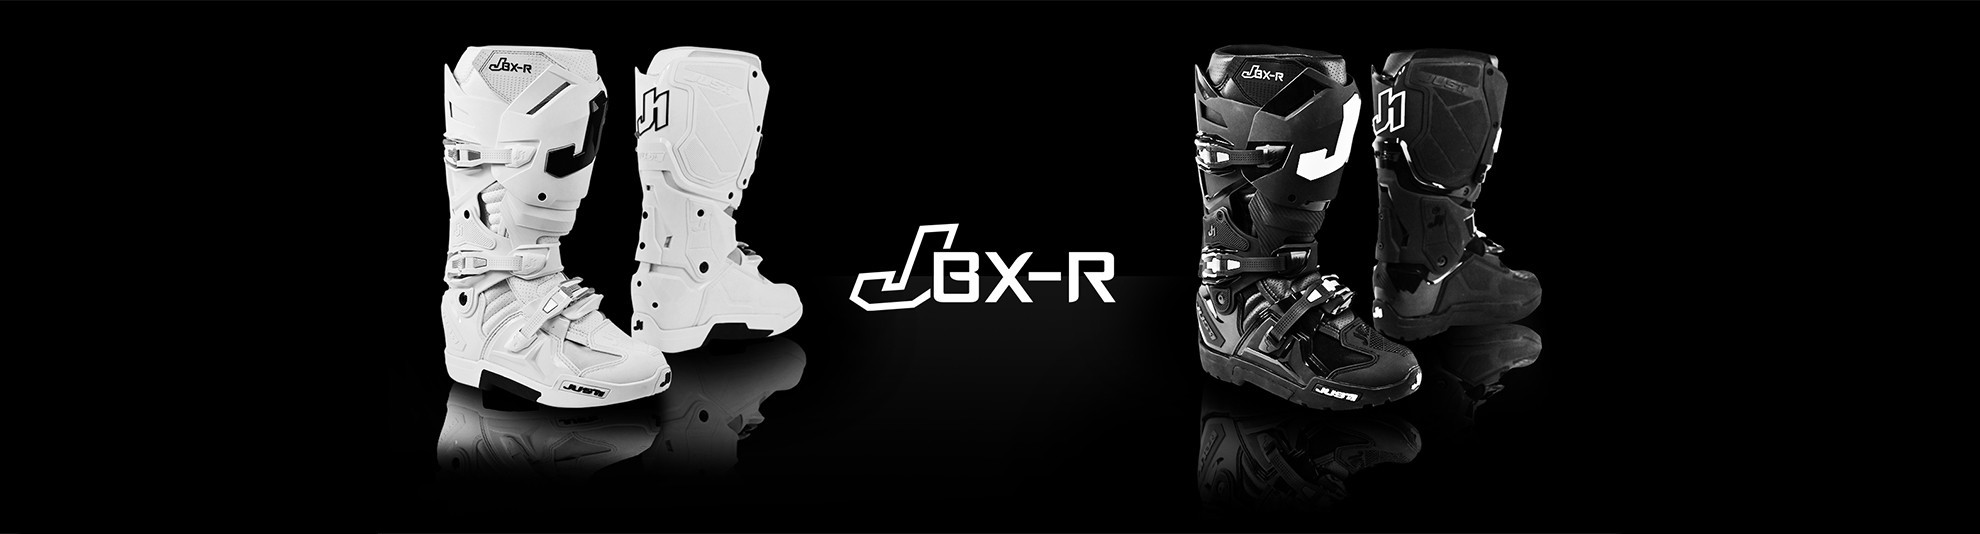 JBX-R MX